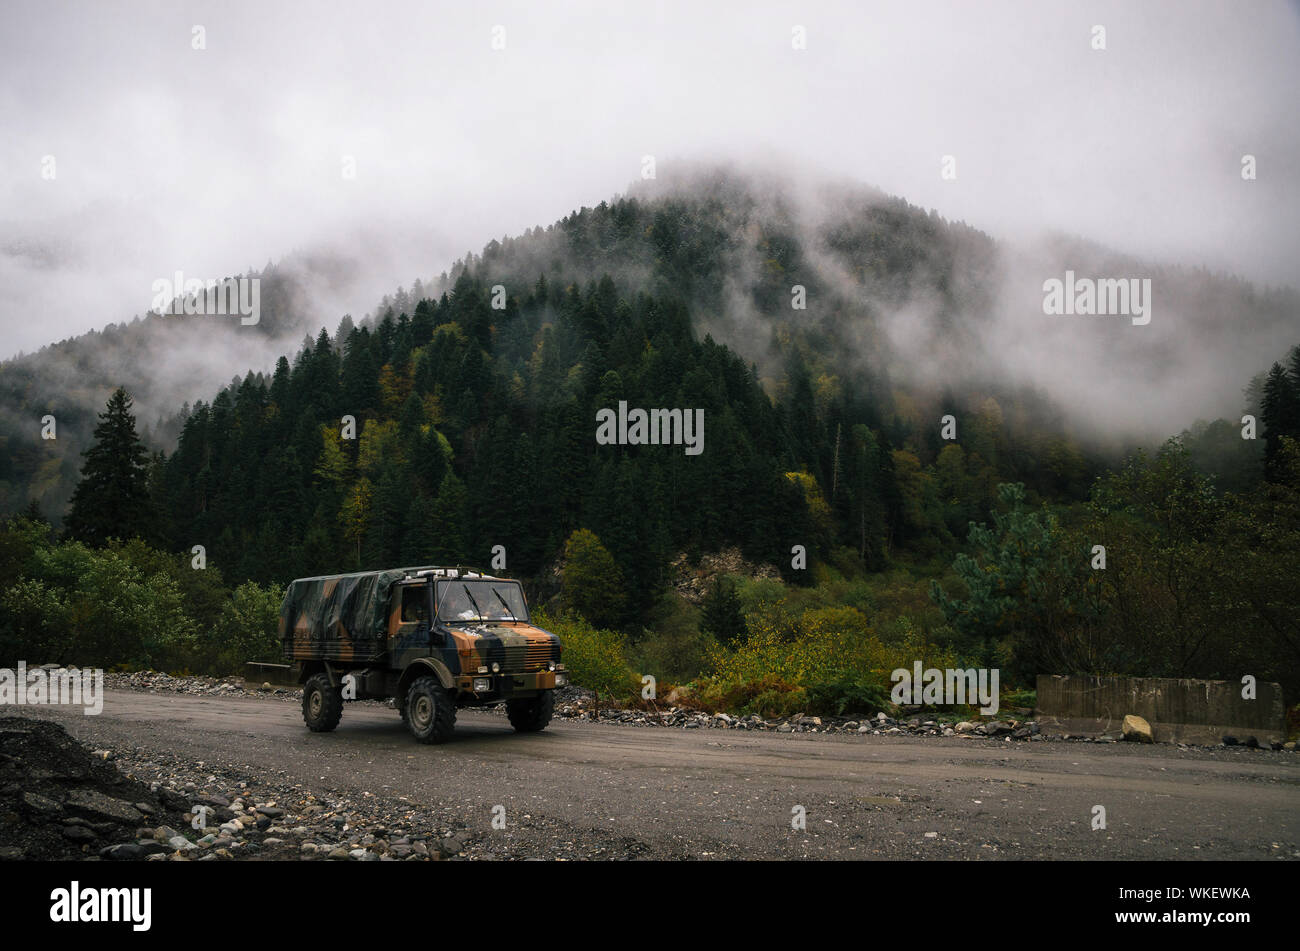 Militär-Lkw der Streitkräfte aus Georgien treibt in der Nähe der Grenze zu Südossetien gegen die verschneite Bäume im Nebel Wolke auf dem Berg Stockfoto